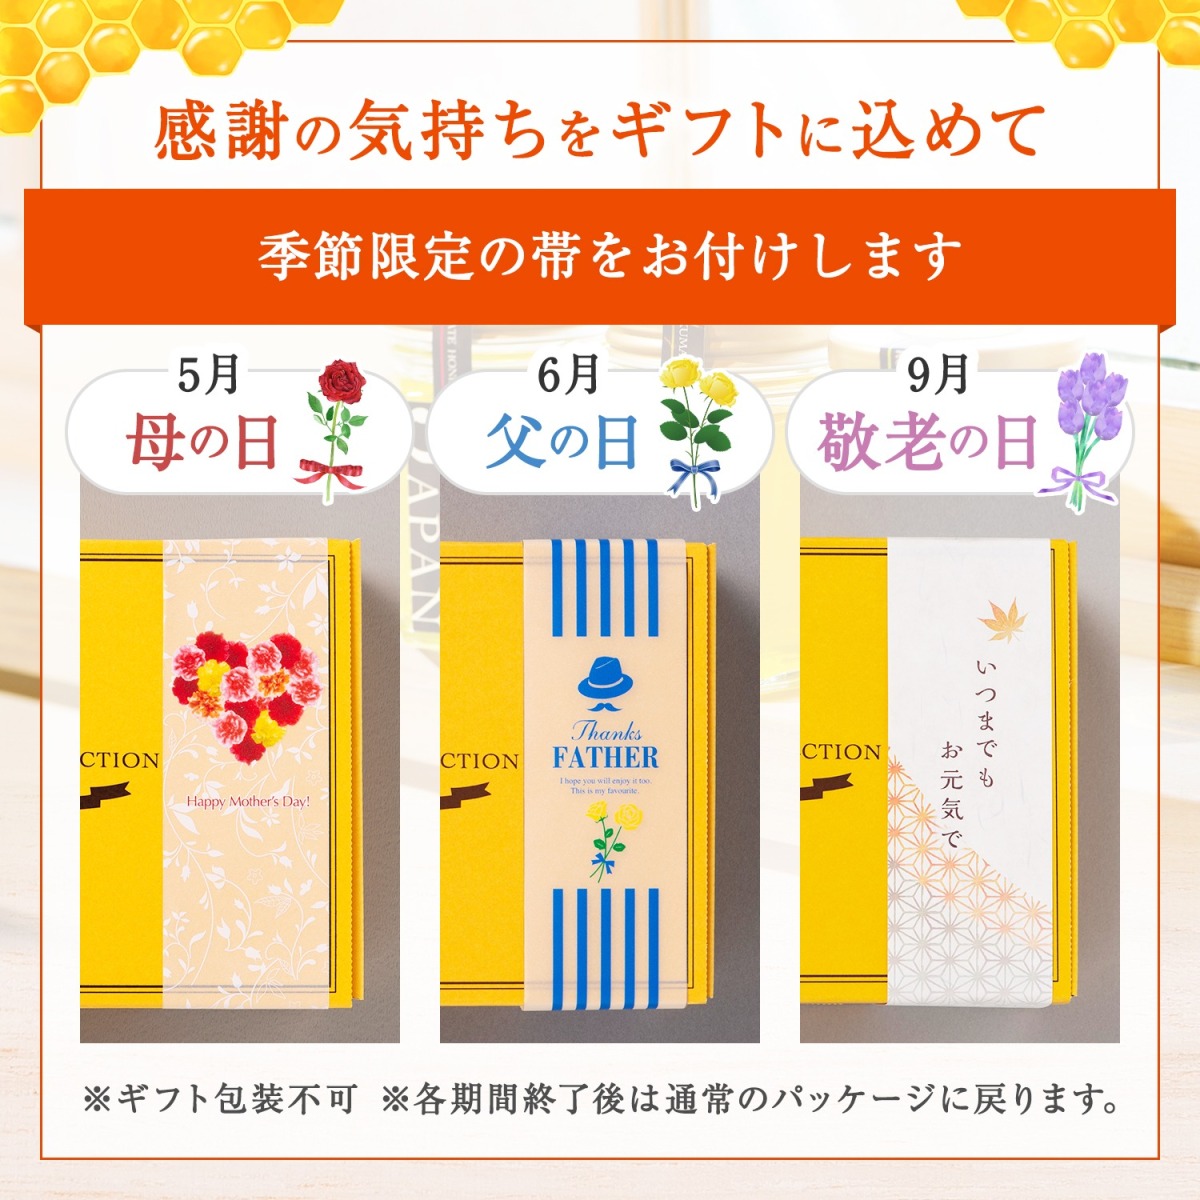  День отца местного производства мед 130g×3 вид ( Akashi a*tochi* 100 цветок ) подарок комплект бесплатная доставка 